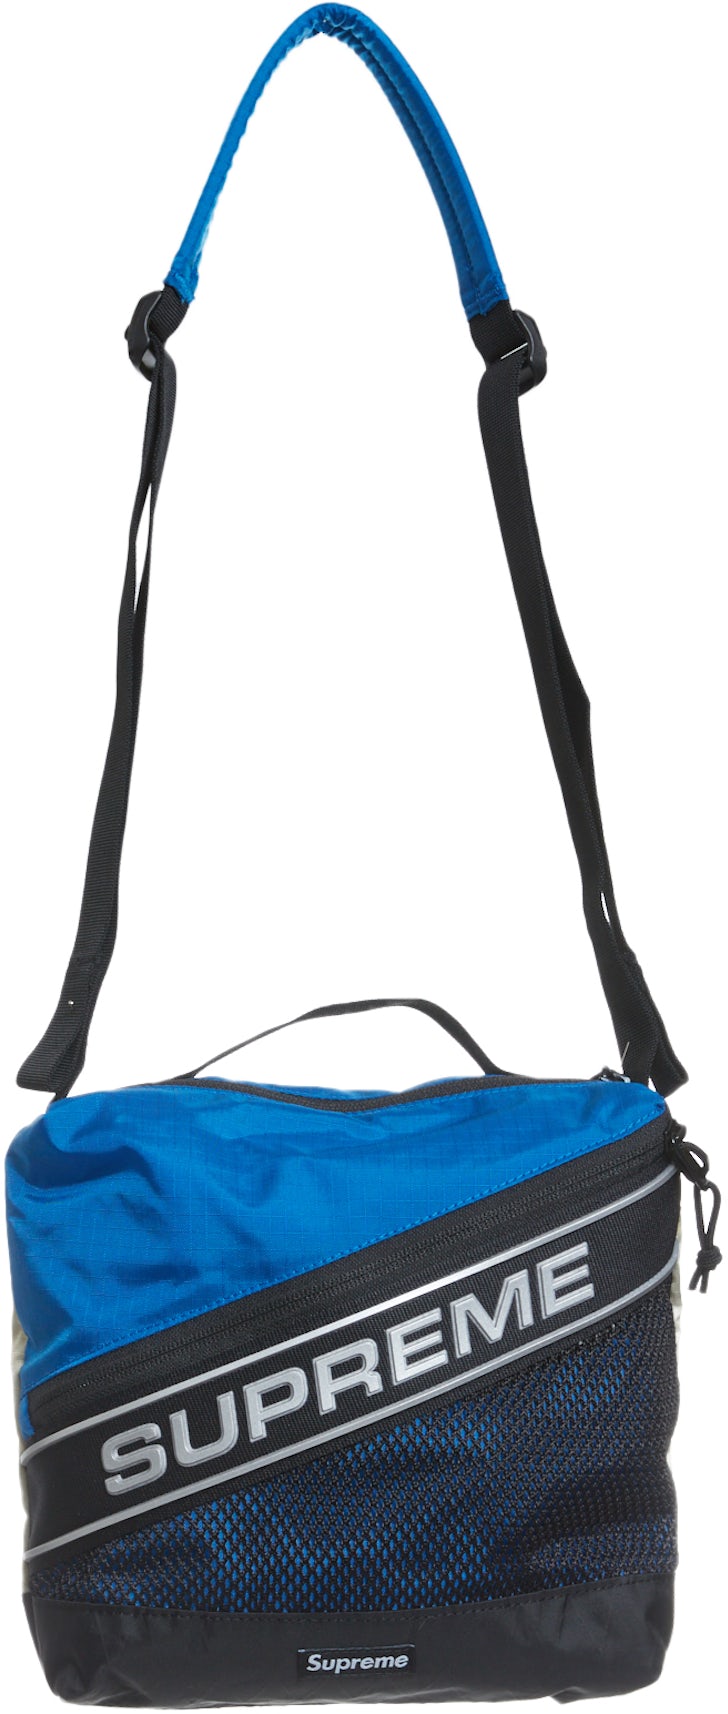 Blue Supreme Shoulder bags for Women